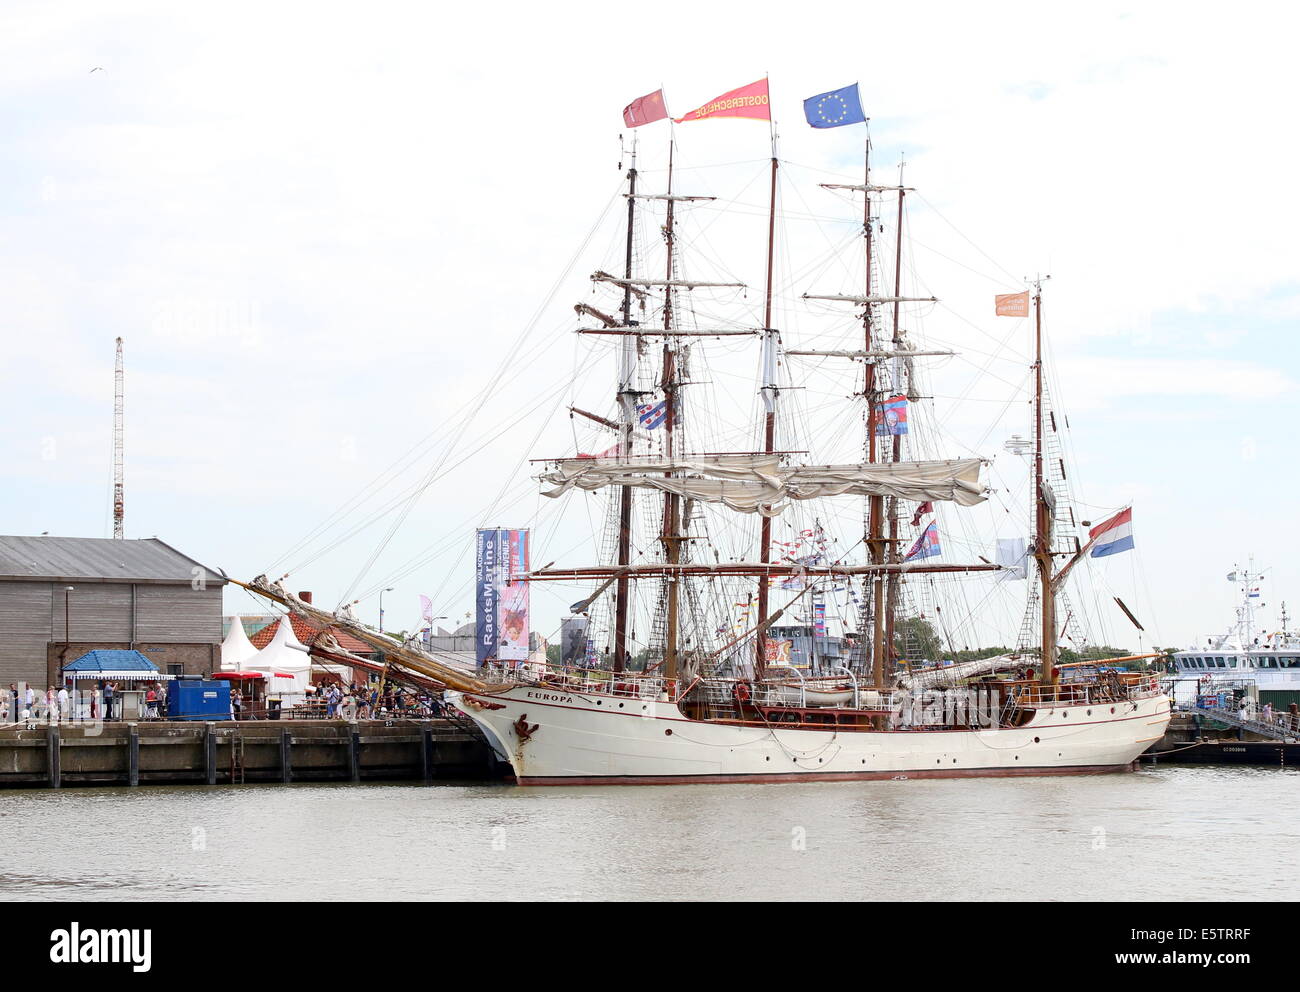 Dutch barque à coque d'acier et à l'Europa grand voilier Juillet 2014 Tall Ship Races dans Harlingen, Pays-Bas Banque D'Images